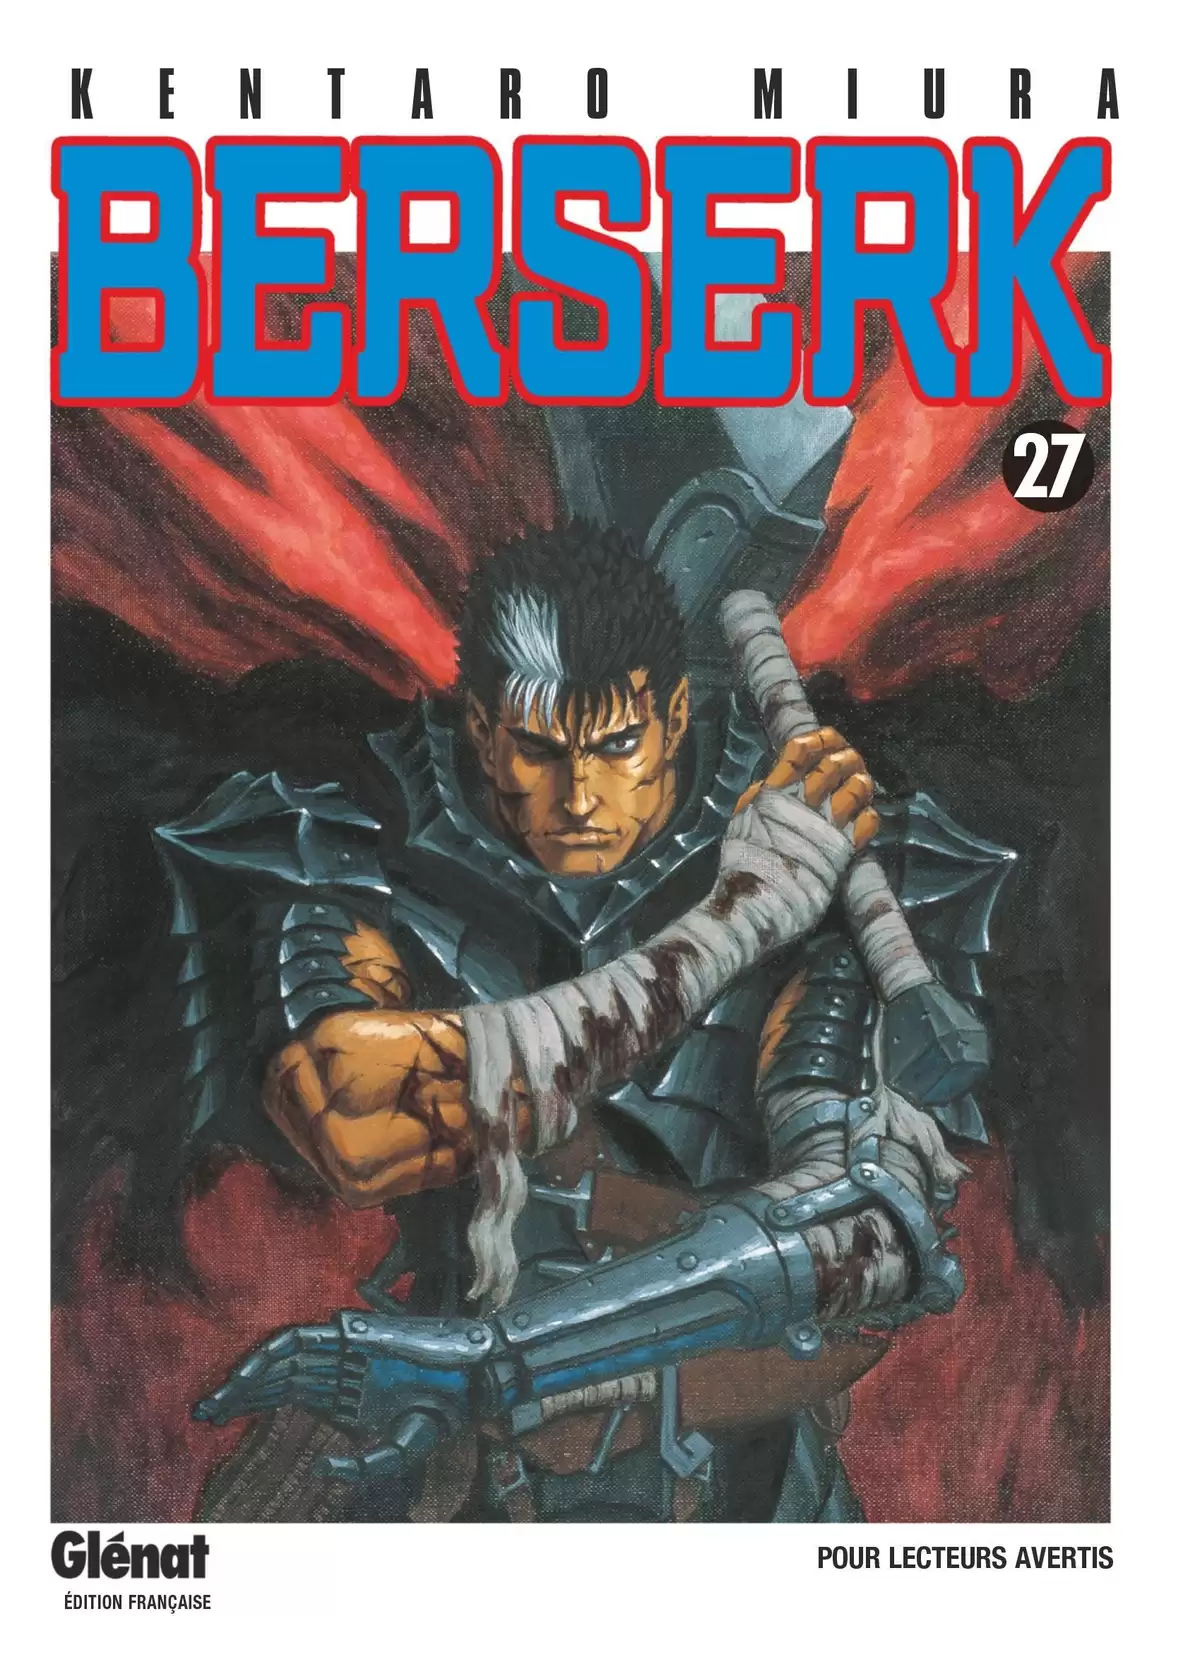 Berserk Volume 27 page 1